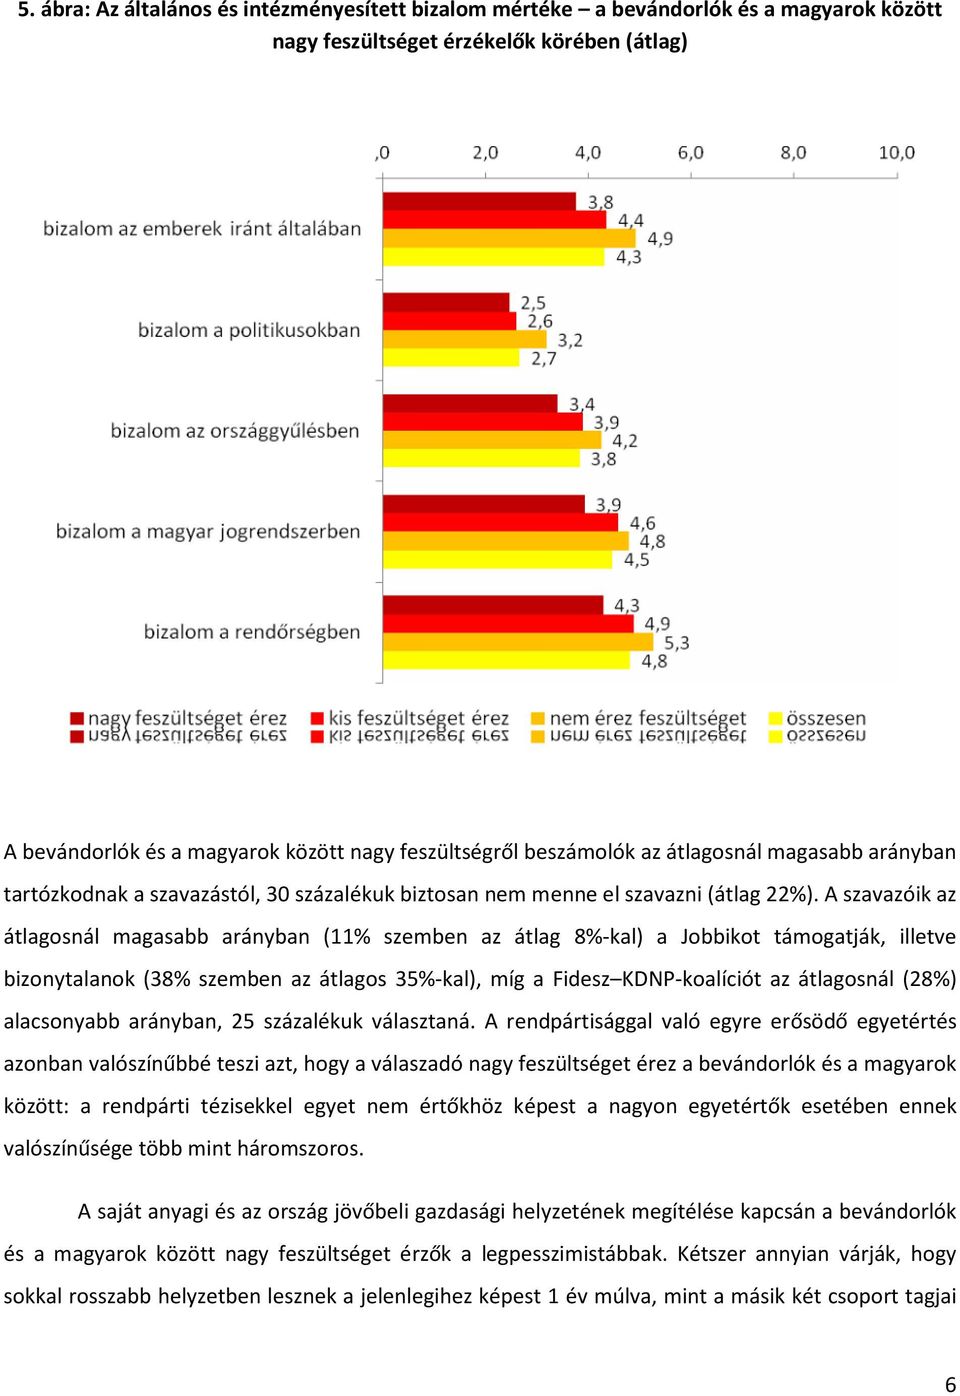 A szavazóik az átlagosnál magasabb arányban (11% szemben az átlag 8%-kal) a Jobbikot támogatják, illetve bizonytalanok (38% szemben az átlagos 35%-kal), míg a Fidesz KDNP-koalíciót az átlagosnál